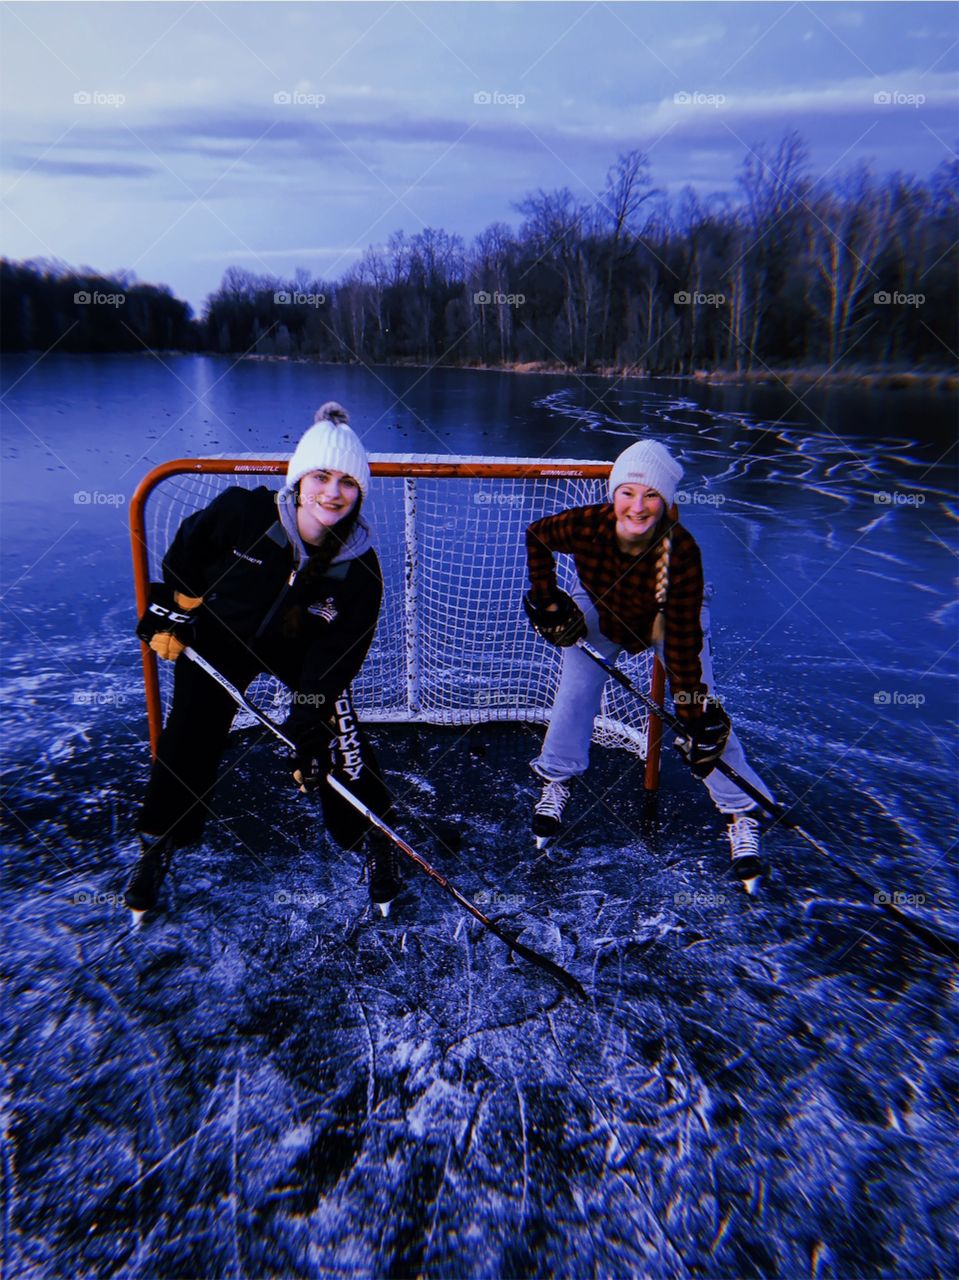 Pond hockey